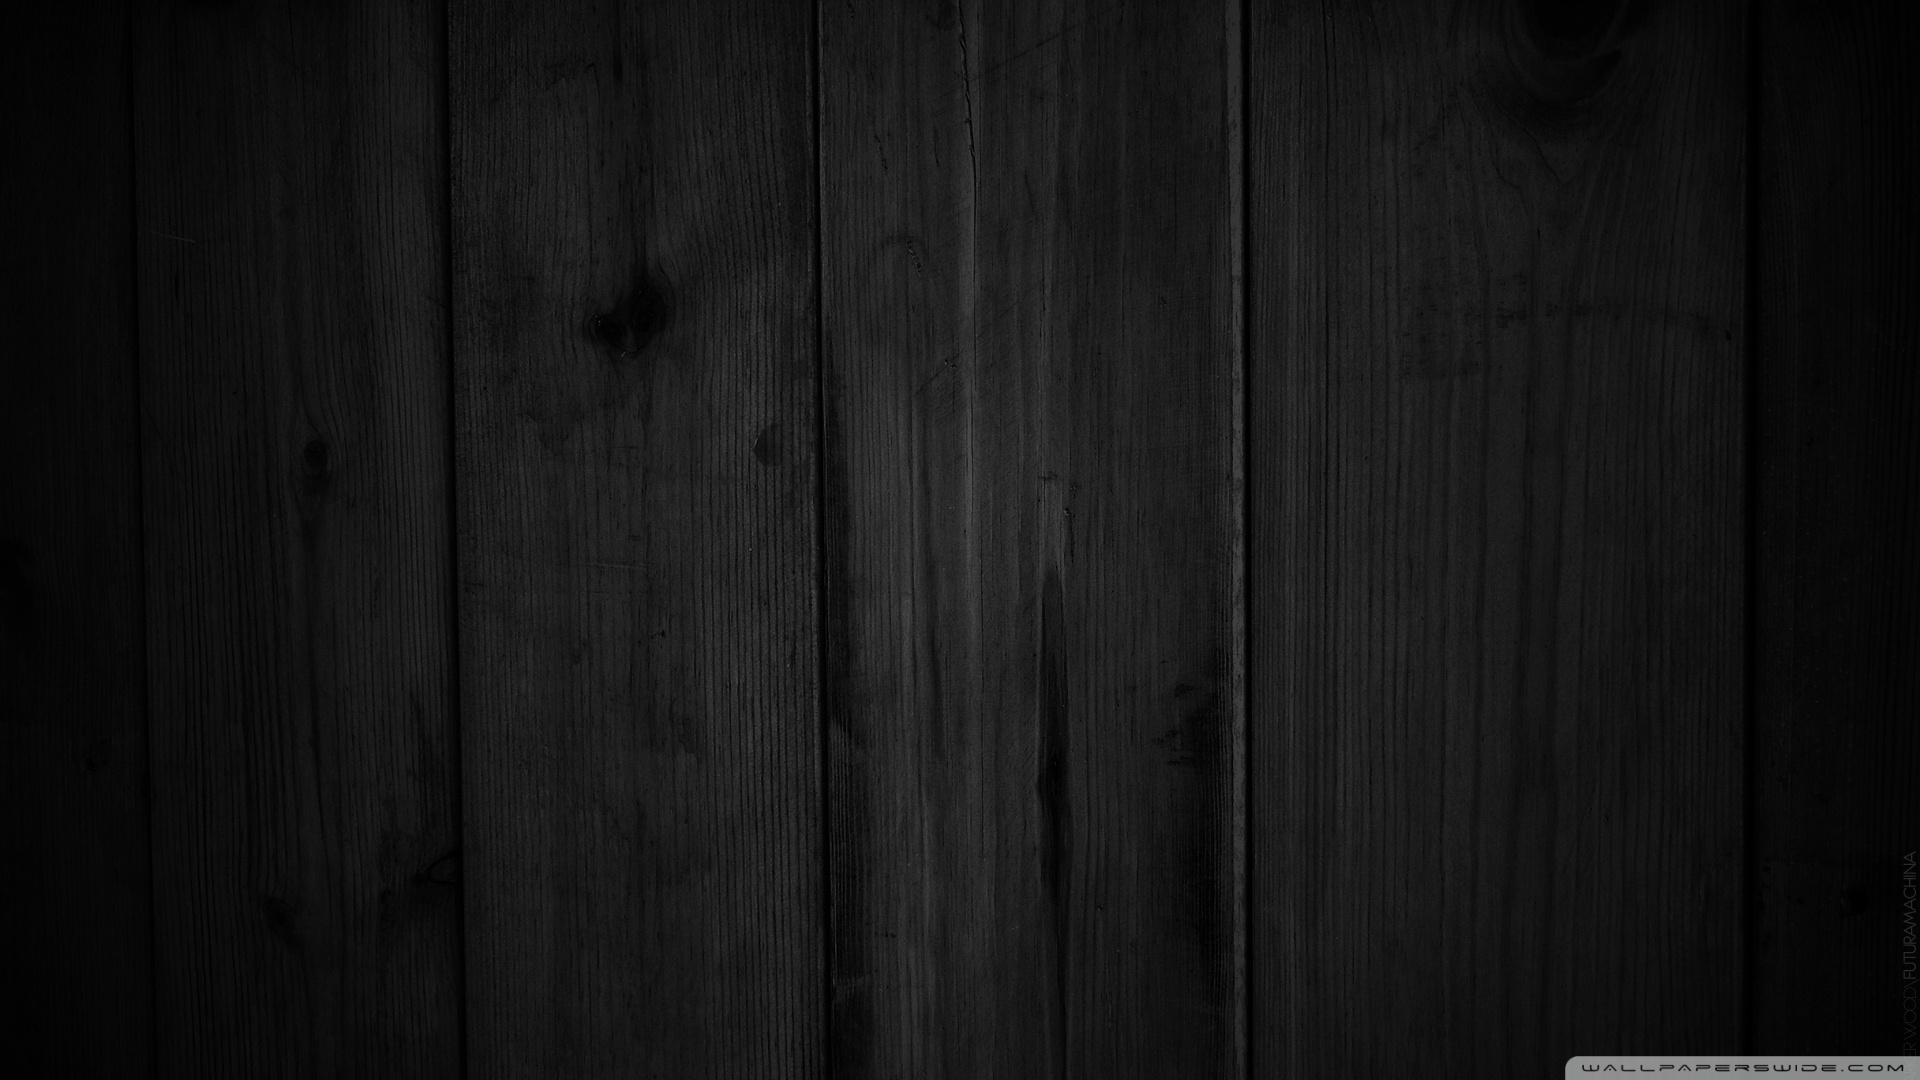 Tìm thấy một hình nền gỗ đen đầy cổ điển để làm nổi bật màn hình. Nét đặc trưng của gỗ đen sẽ tạo nên một không gian ấm áp và mang tính chất trứ danh cho màn hình của bạn.